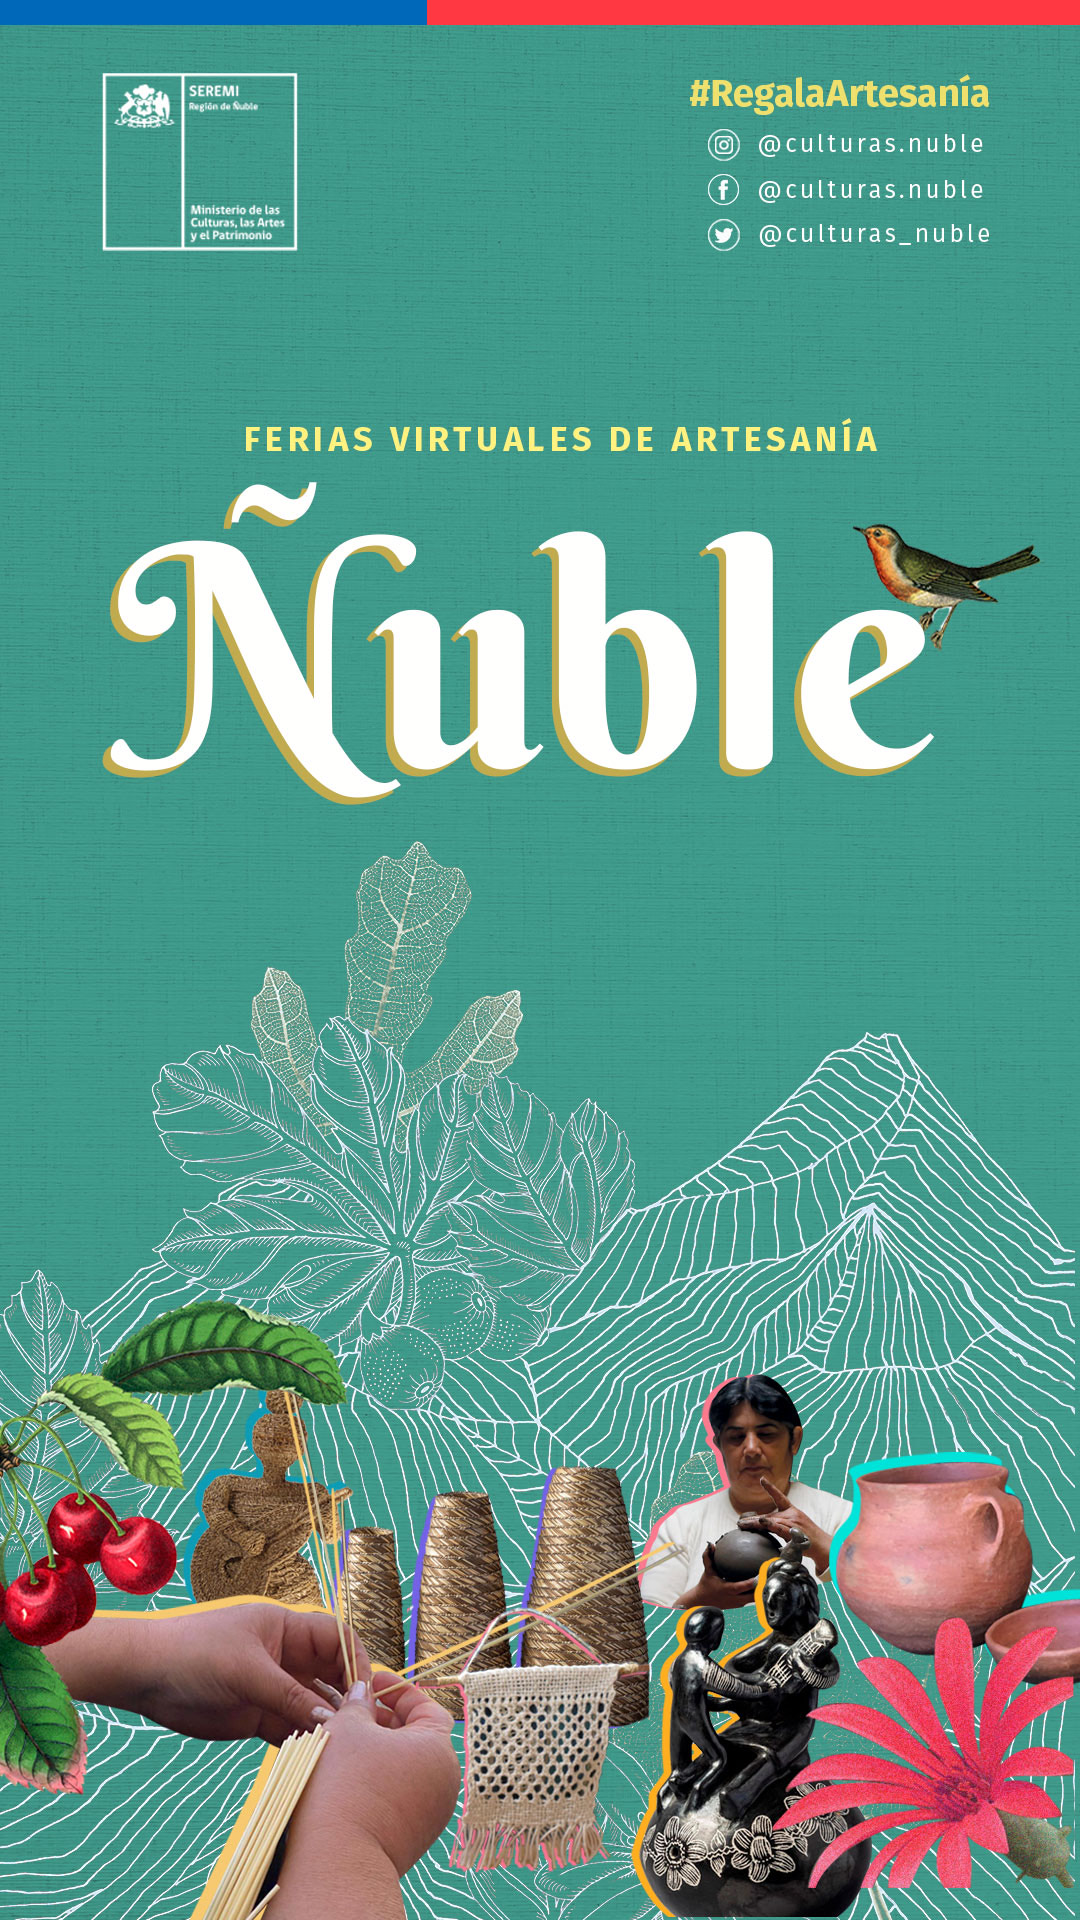 Ferias Virtuales de Artesanía de Ñuble ofrecen envíos gratis